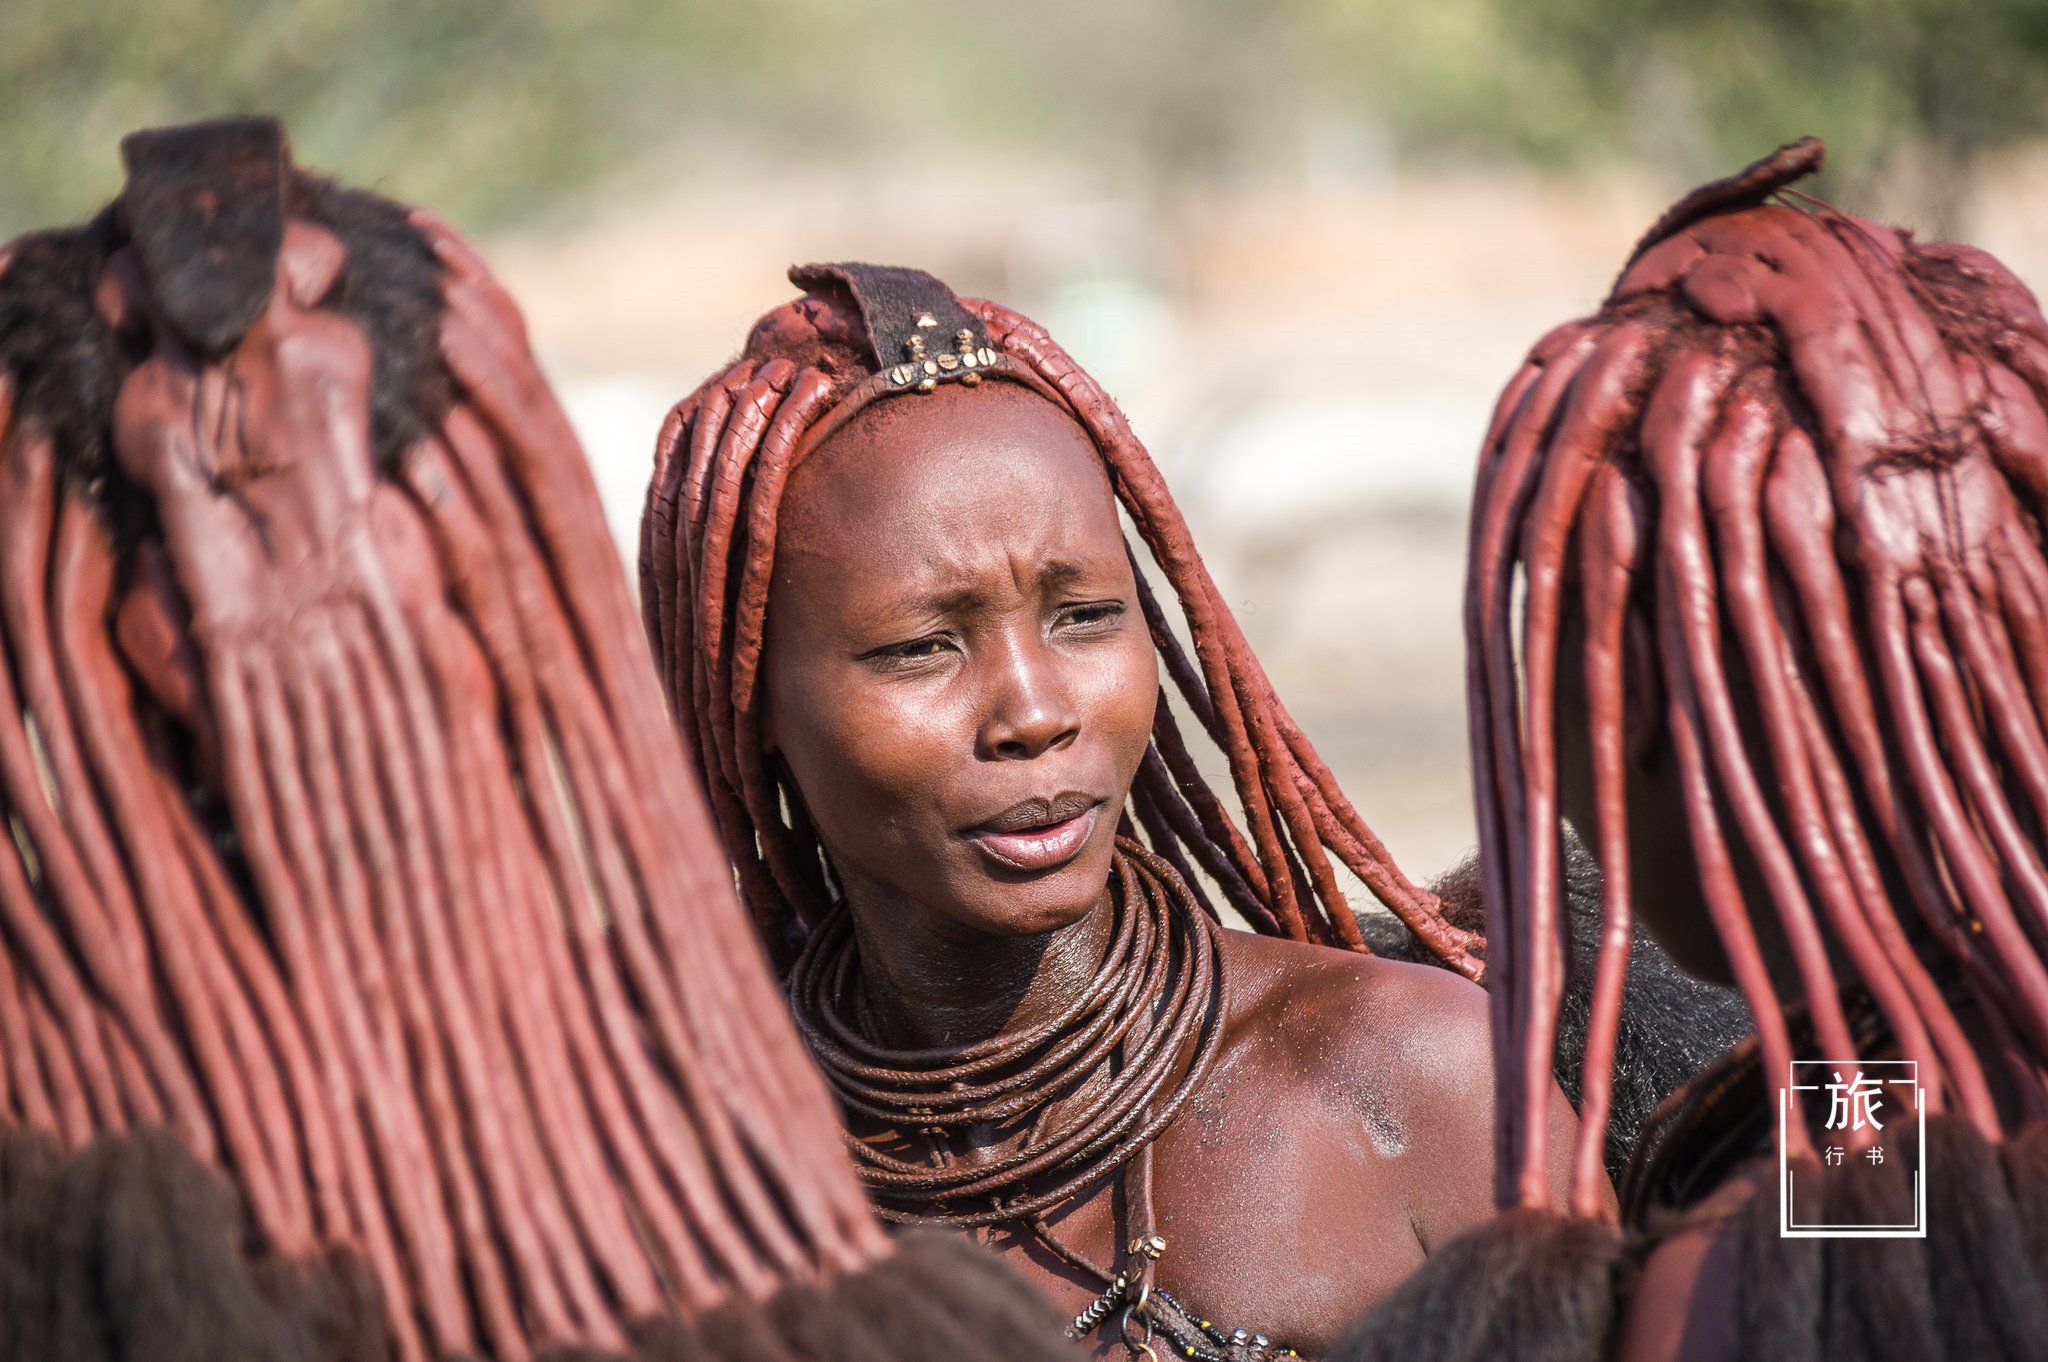 非洲最原始的部落:孩子寿命低,向往外界的生活